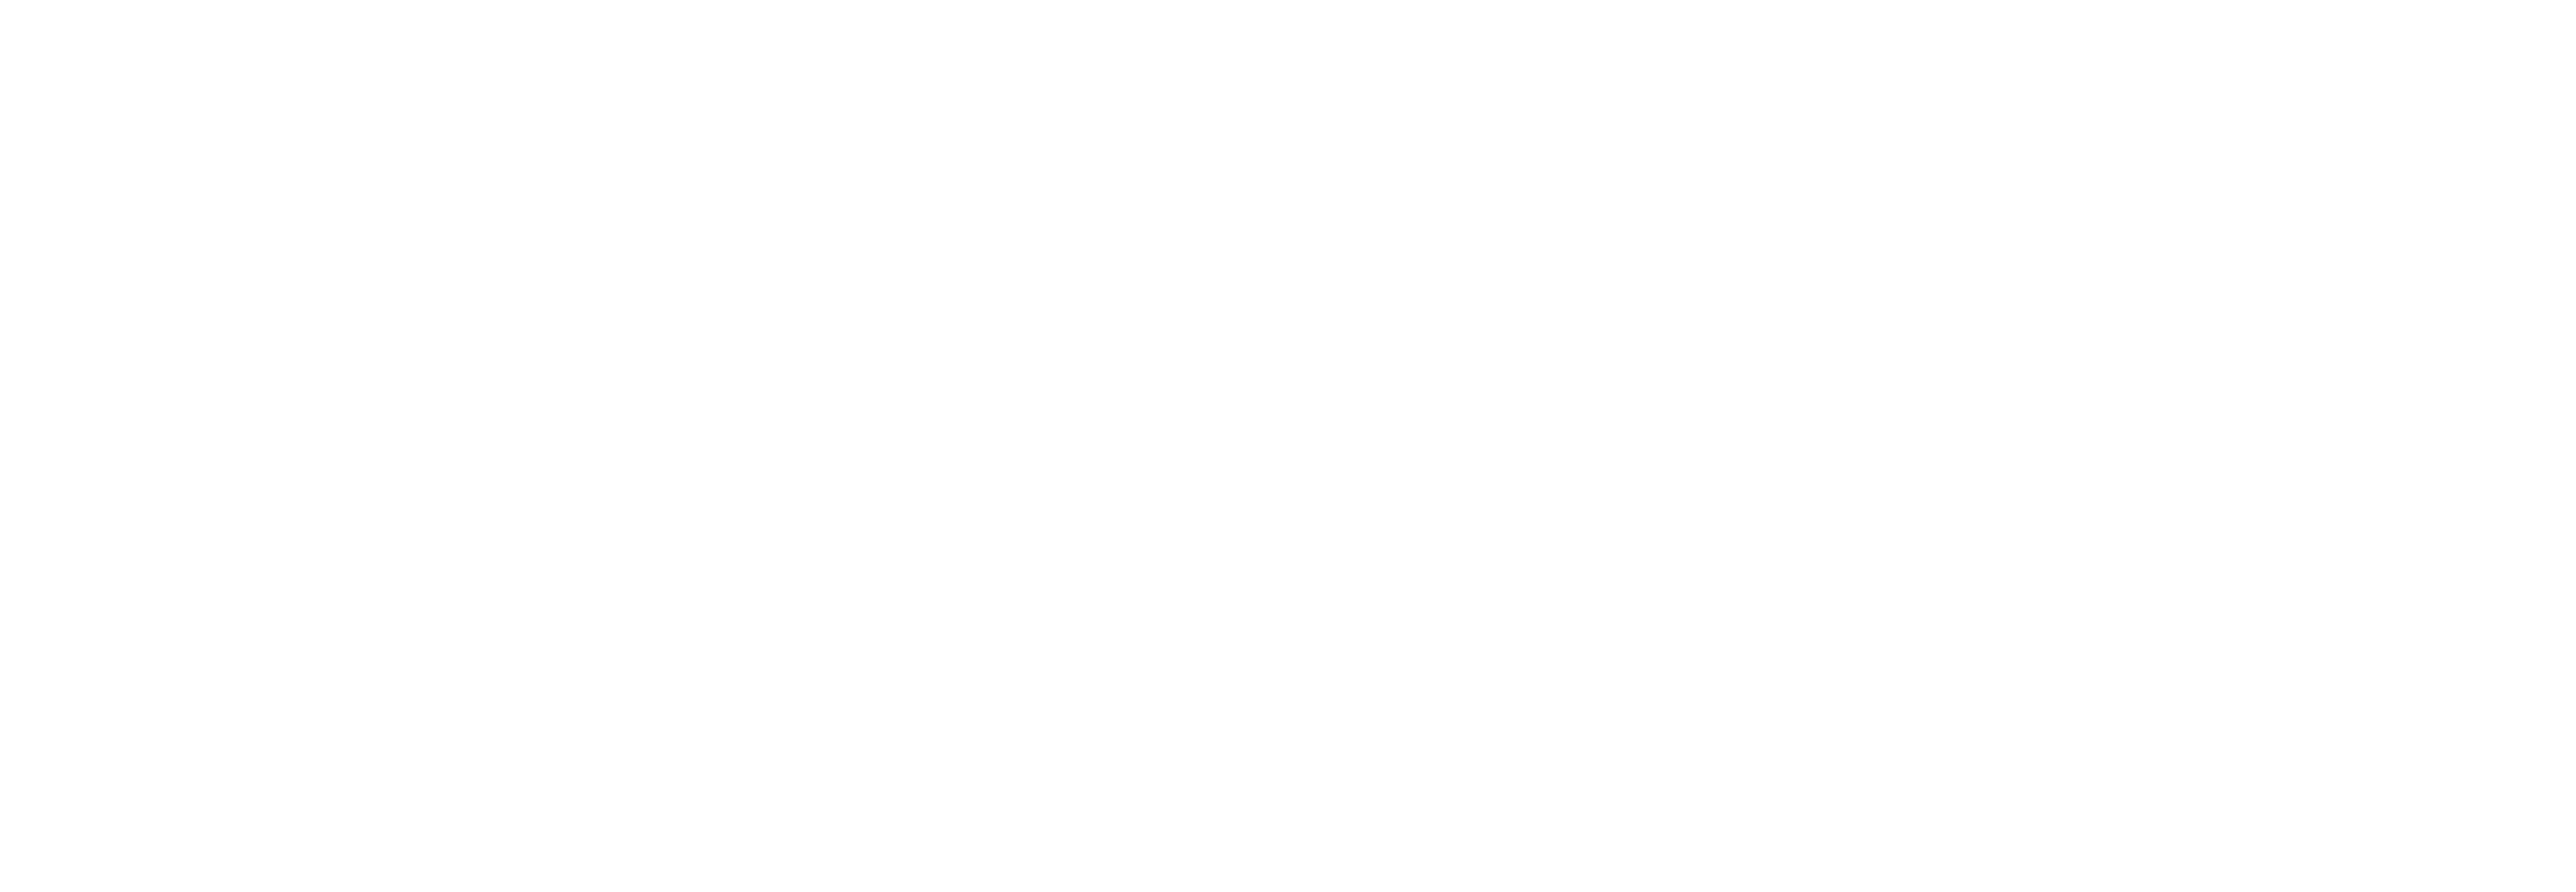 Omni hypnosis training